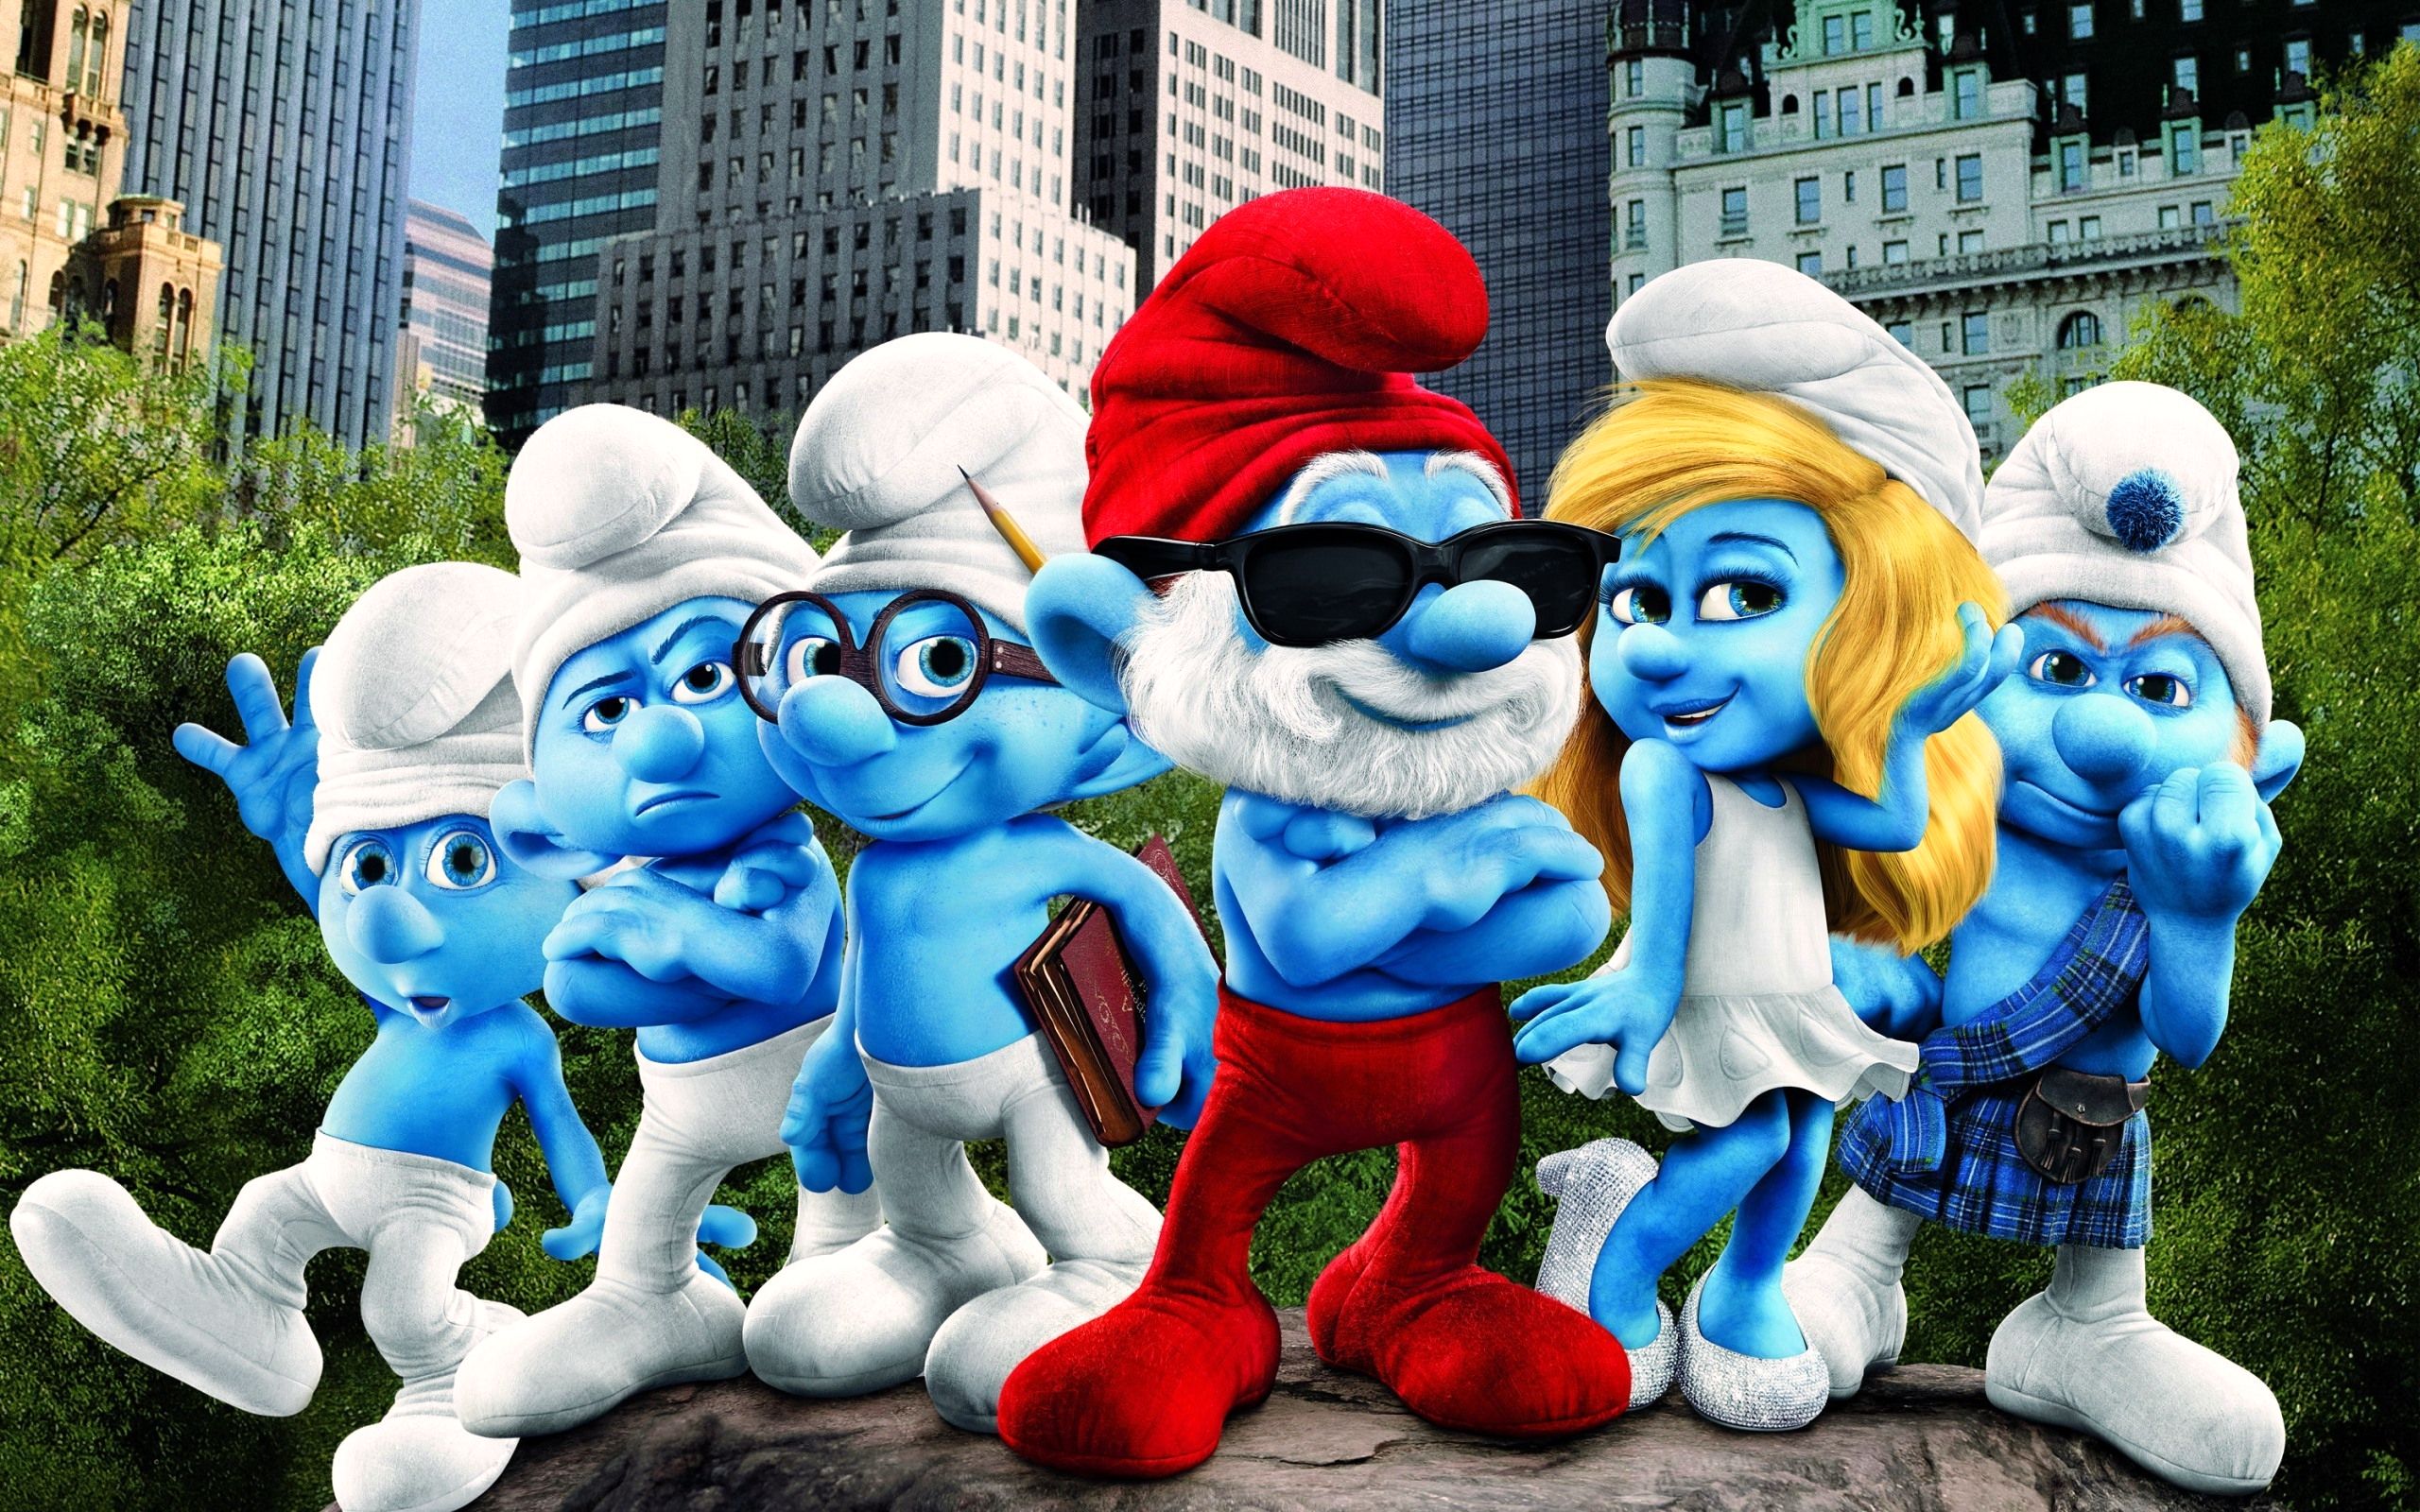 The Smurfs Movies